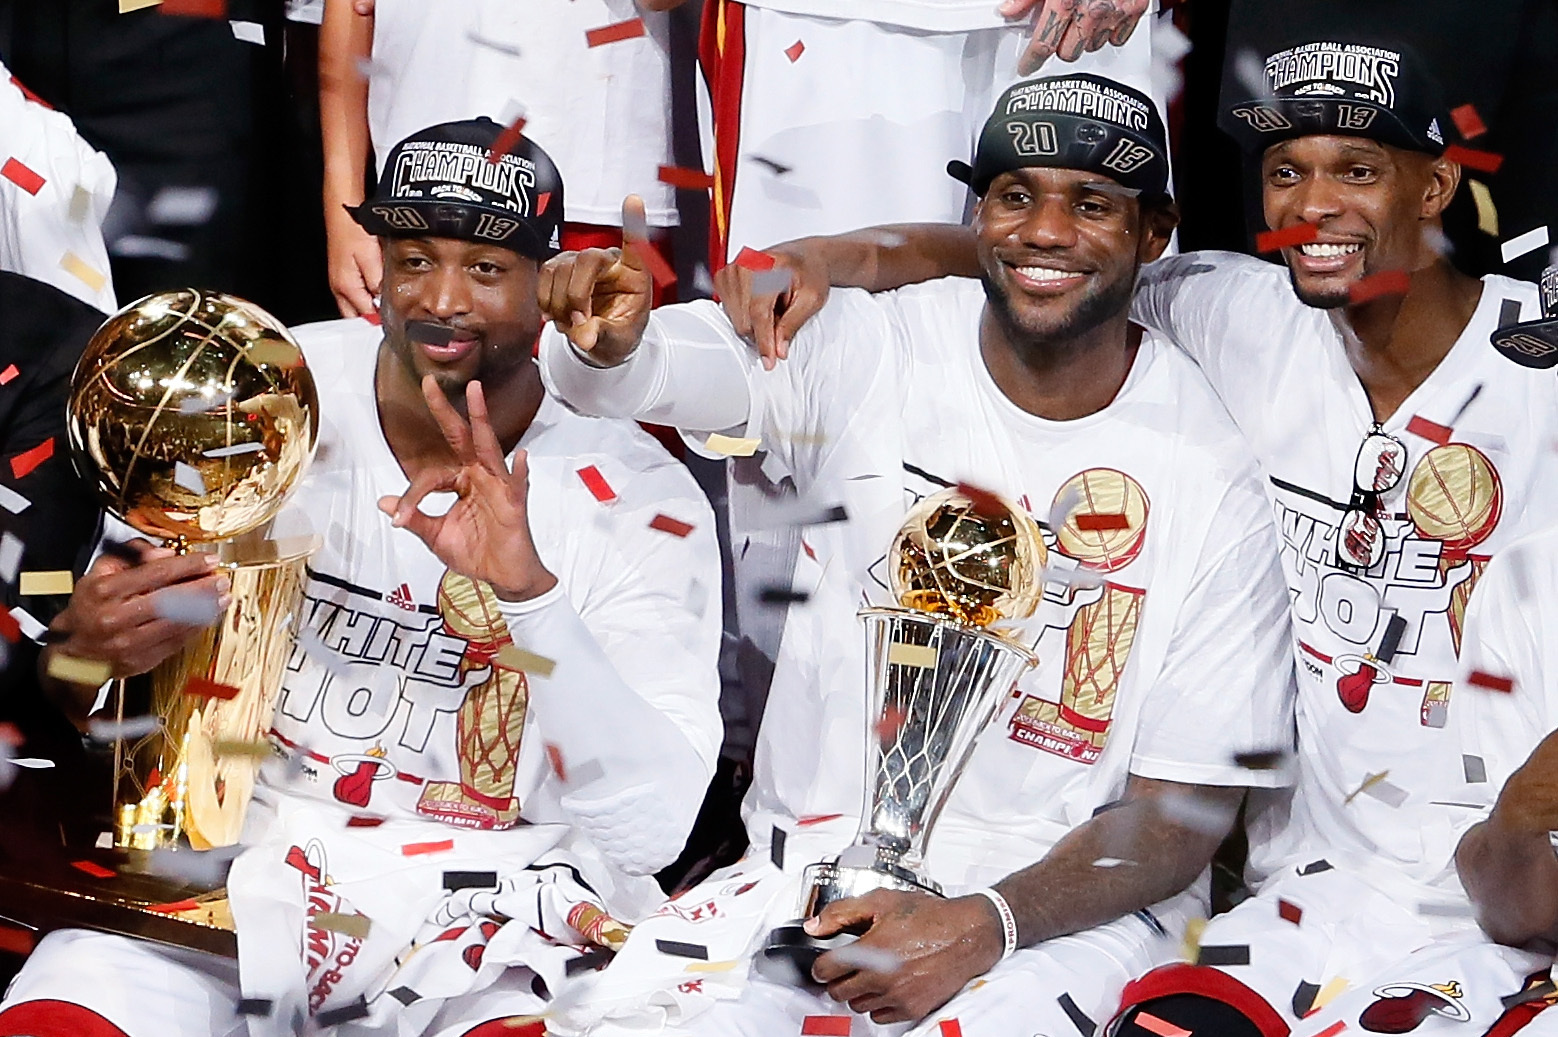 Miami Heat: Ranking Their 3 NBA Championships